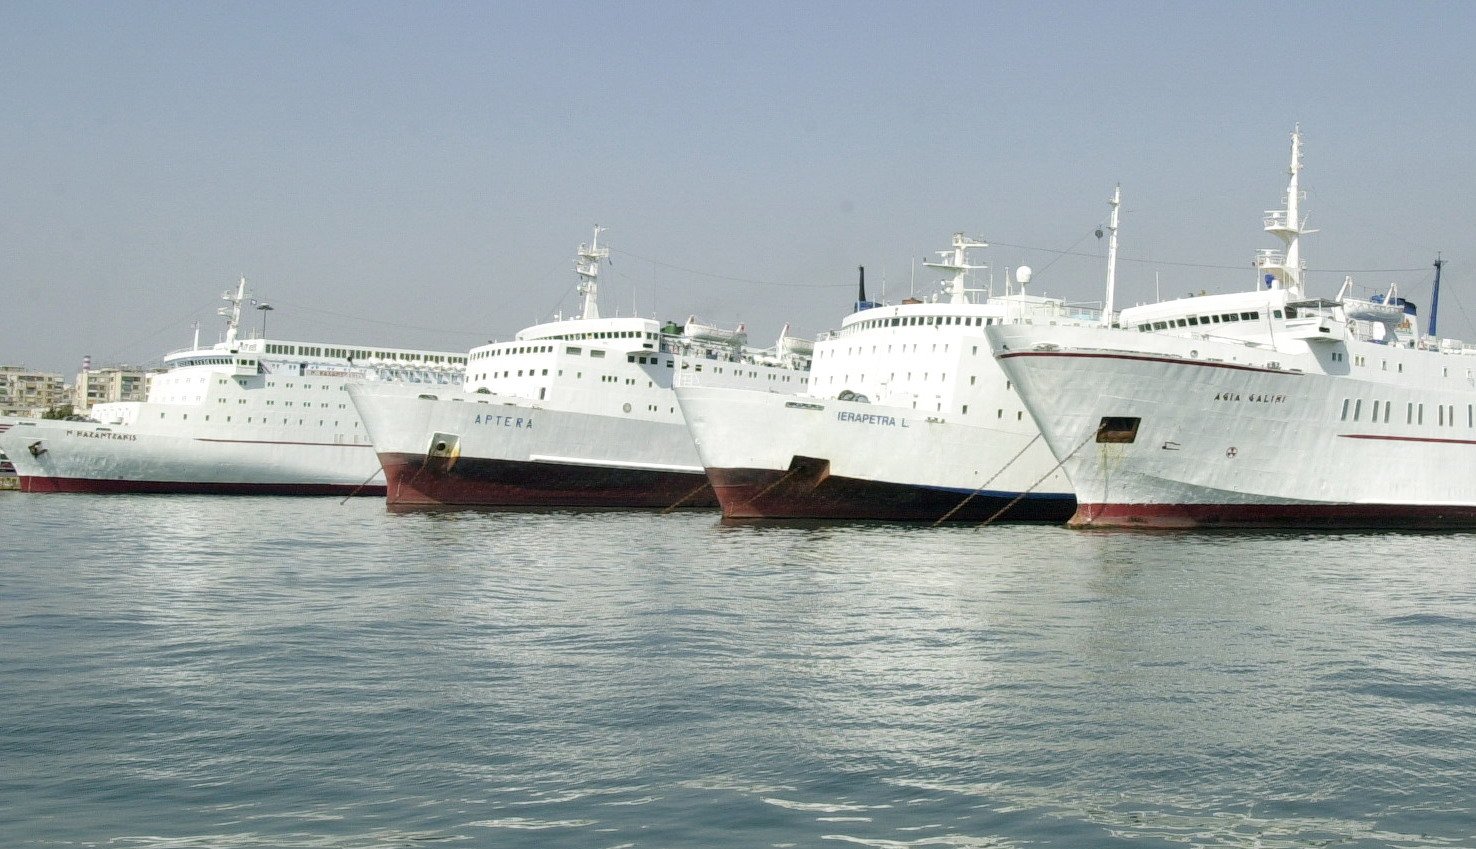 Οικονομική ενίσχυση των ναυτικών που θα πληγούν από τα μέτρα για τον περιορισμό του κορονοϊού, ζητούν 9 ναυτεργατικά σωματεία